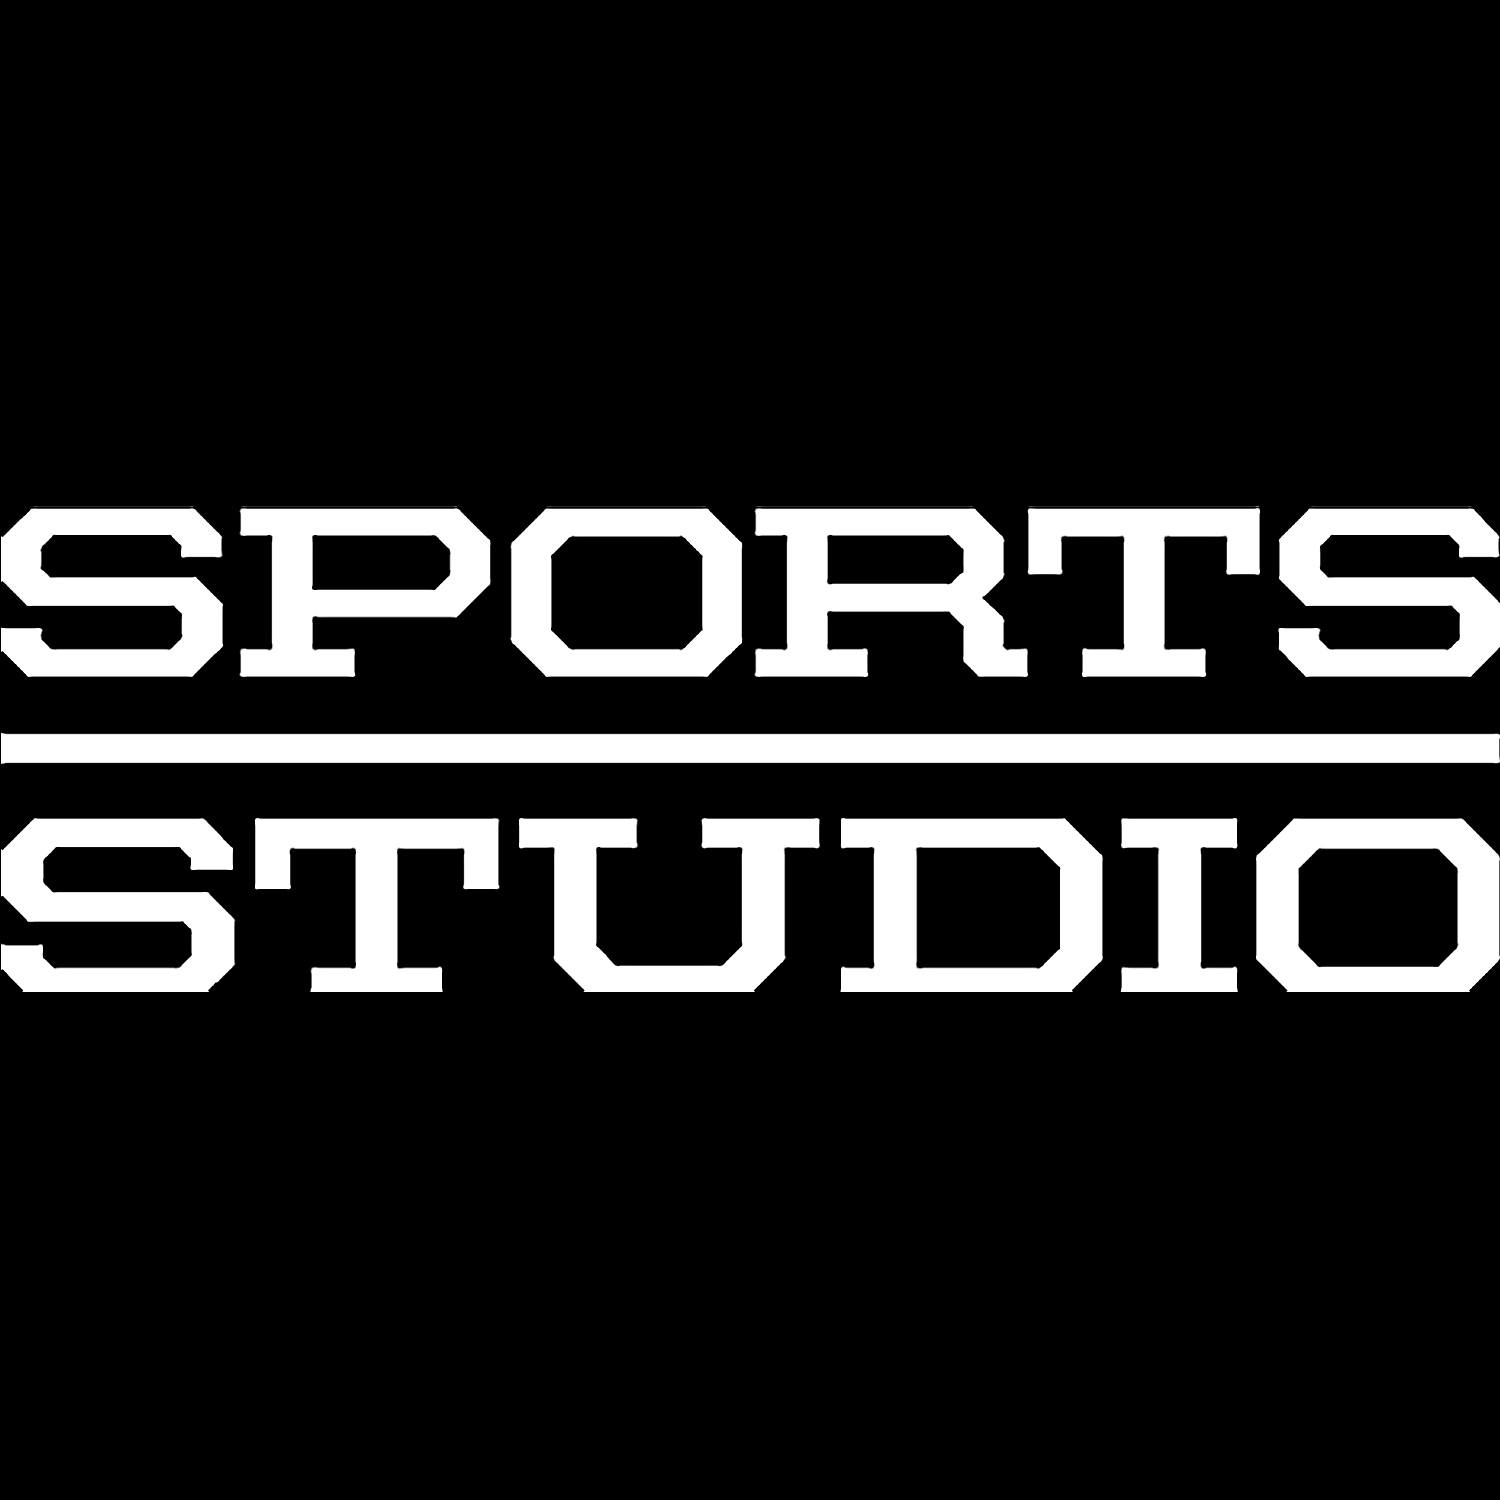 Sports Studio